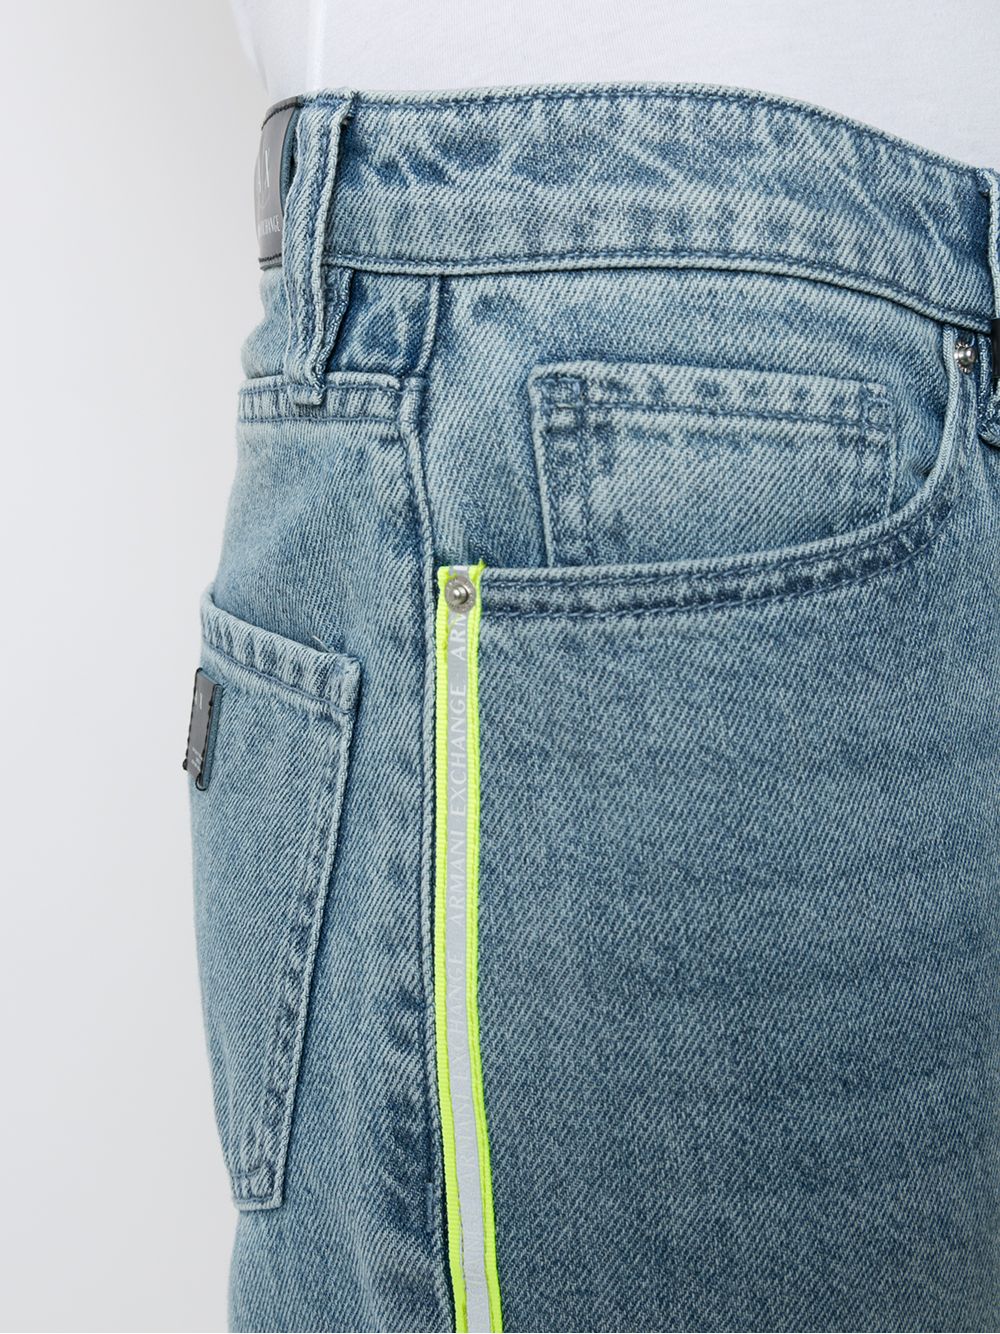 фото Armani exchange укороченные джинсы прямого кроя